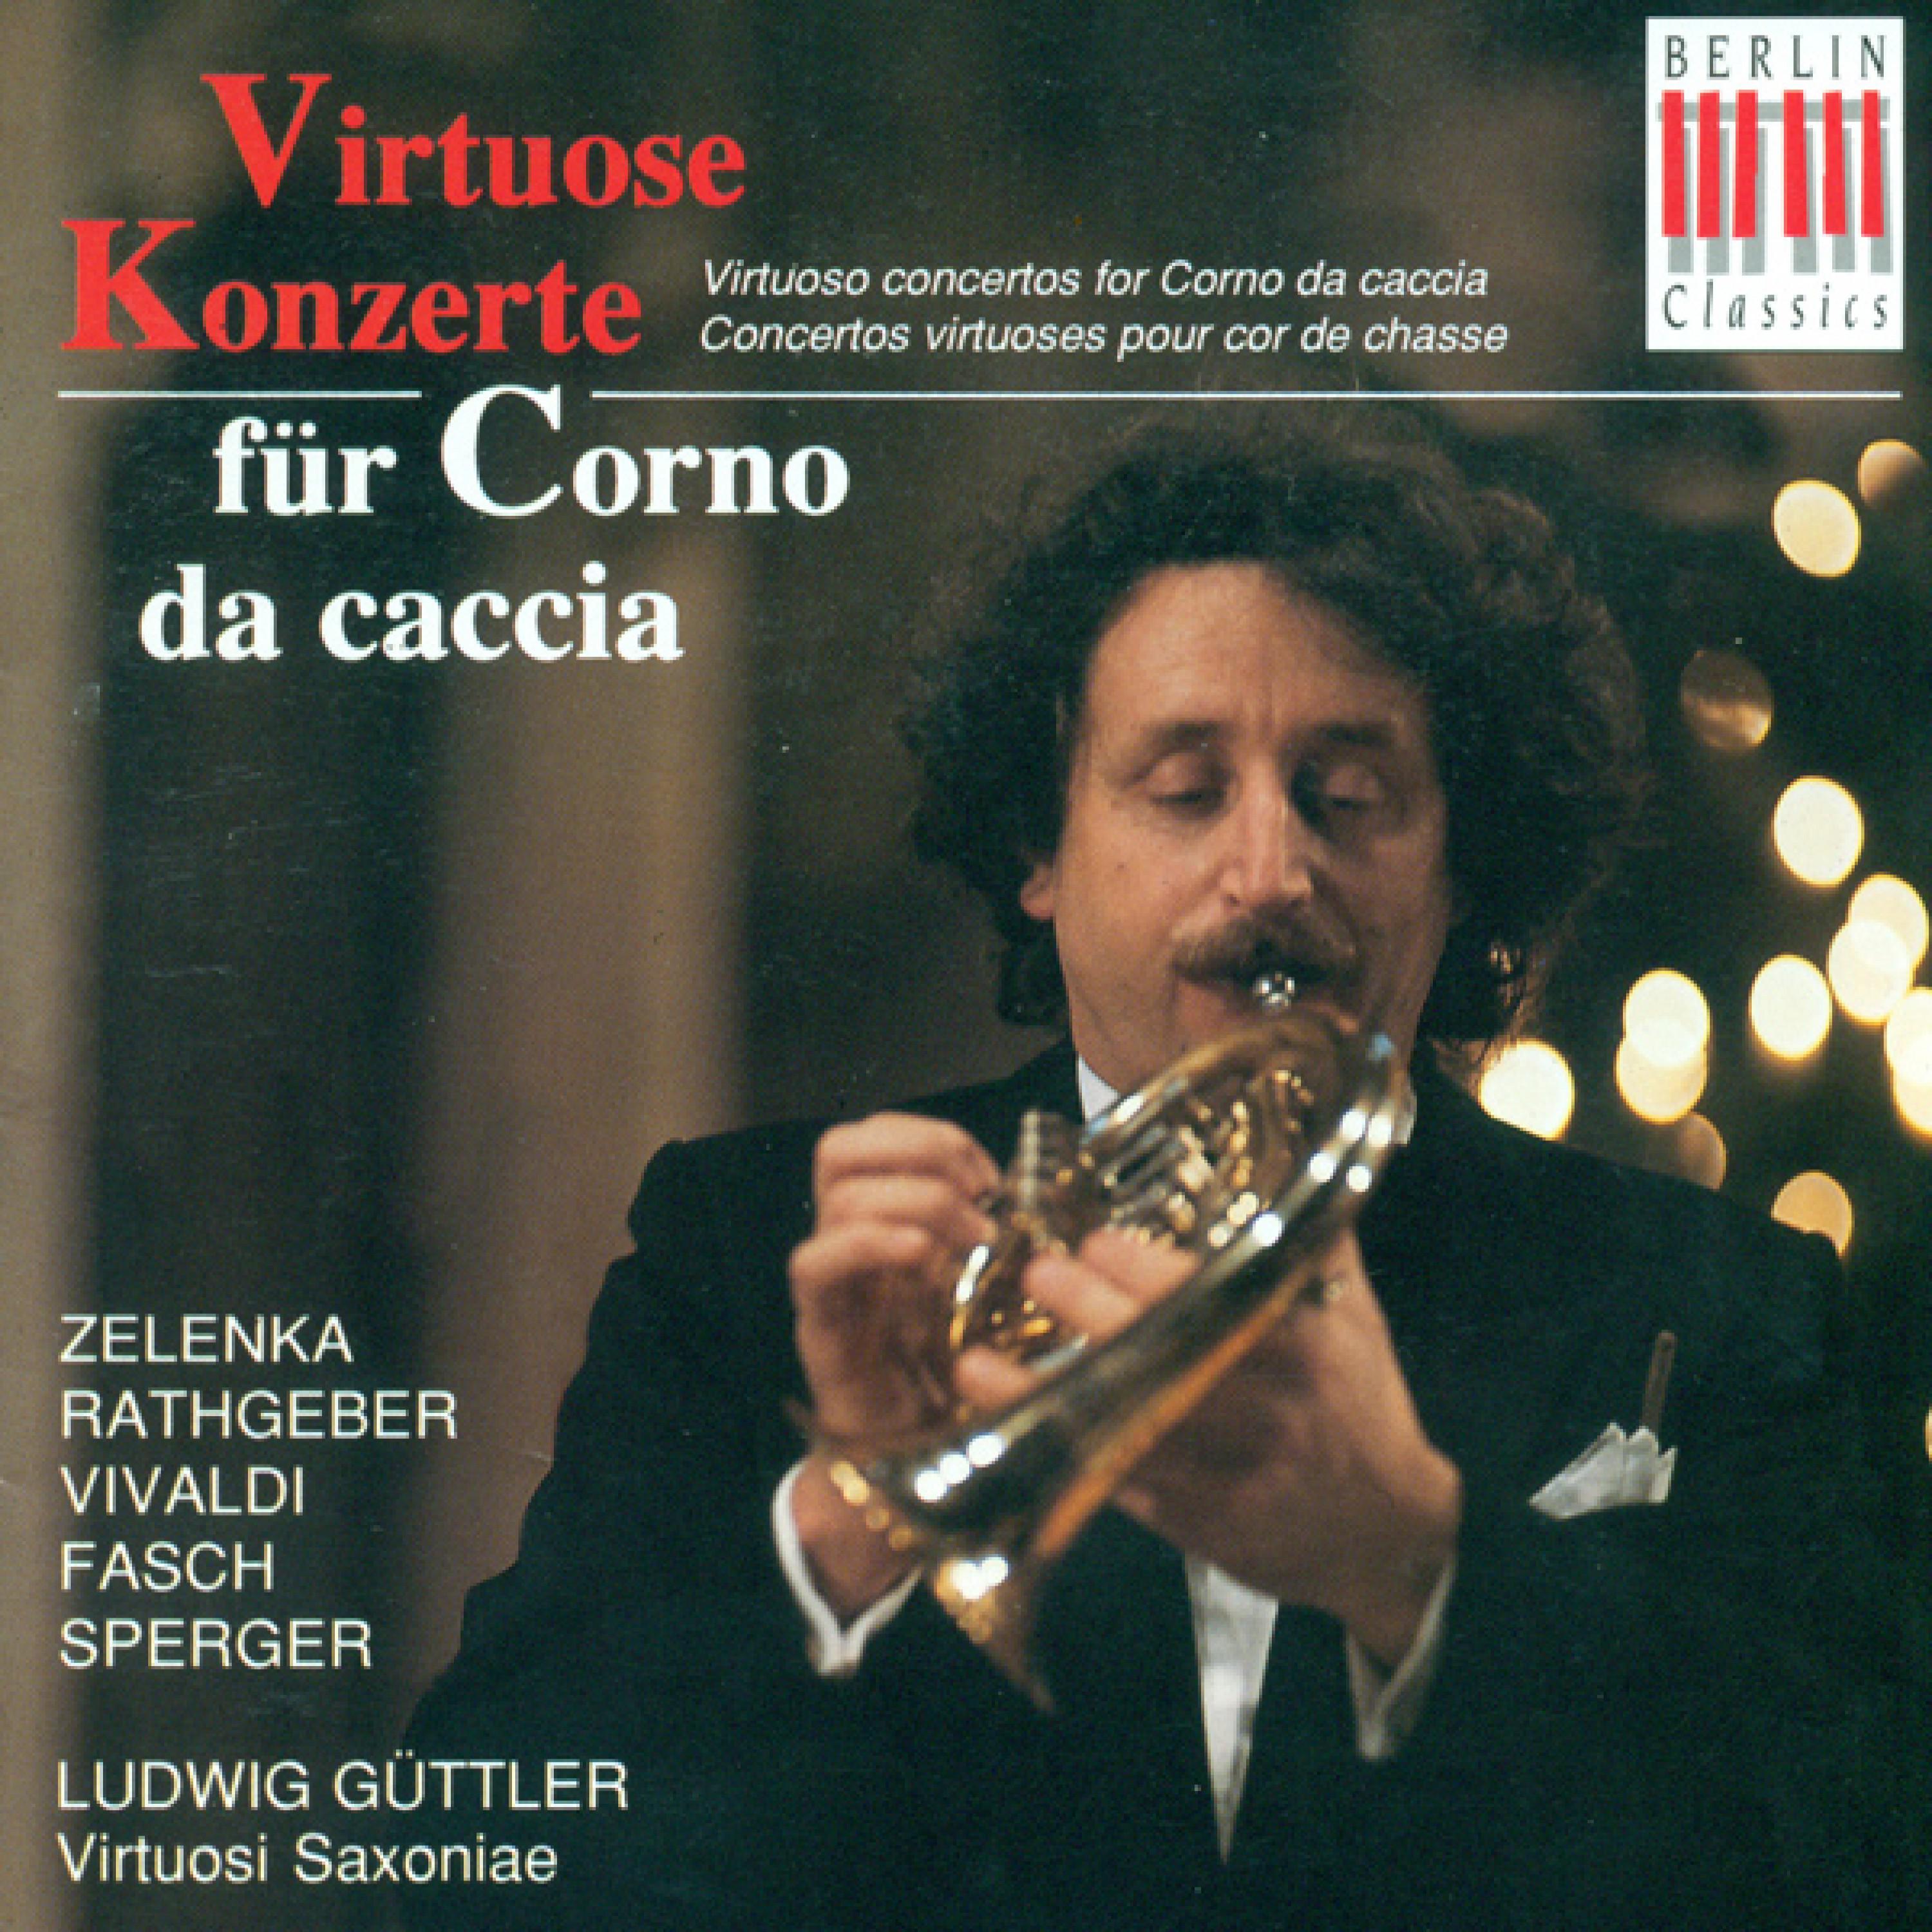 Concerto for Corno da caccia in C Major, Op. 6, No. 19: I. Allegro